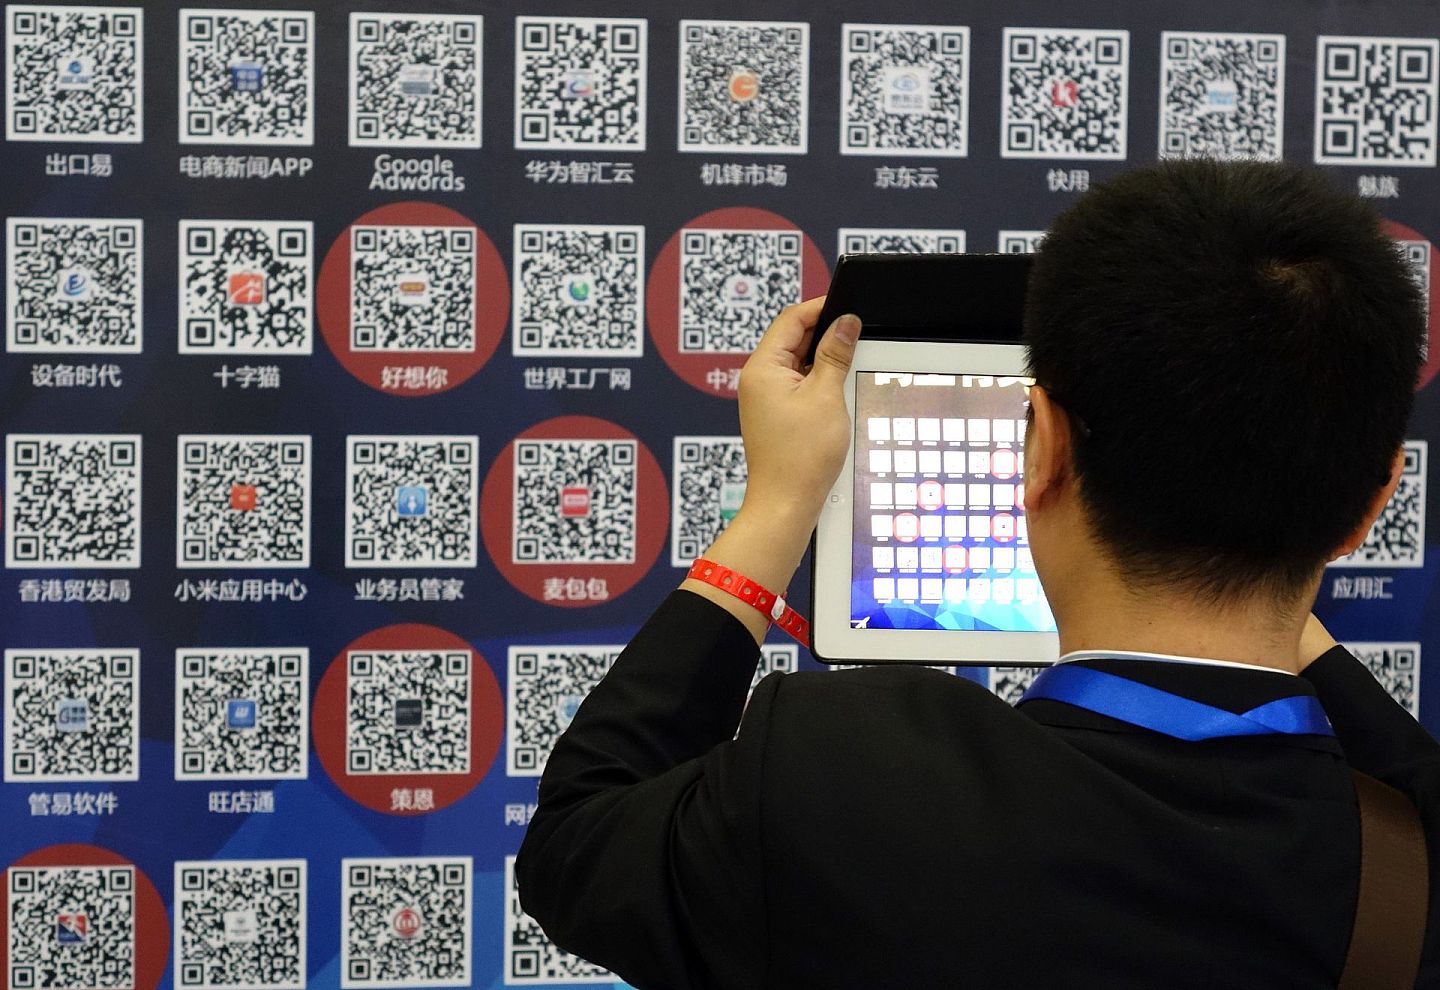 二维码在中国的应用比西方更普及。图为2014年4月21日，郑州华润万象城内一个5米长3米高的二维码墙，上面布满了近百个企业的二维码。（视觉中国）